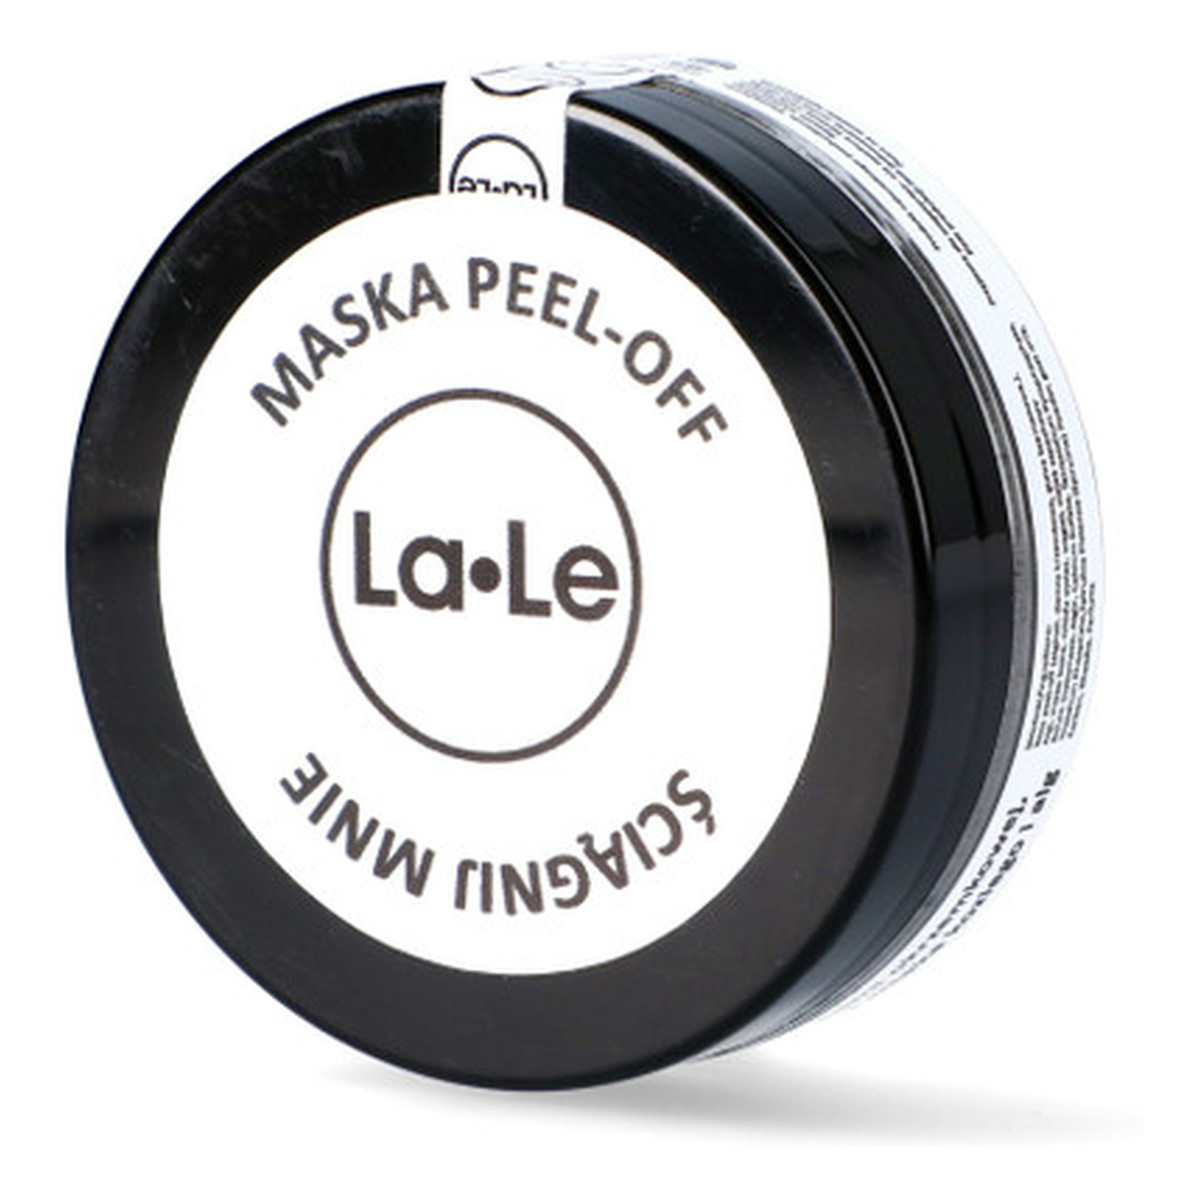 La-Le Maska peel-off oczyszczająco-ściągająca 50ml